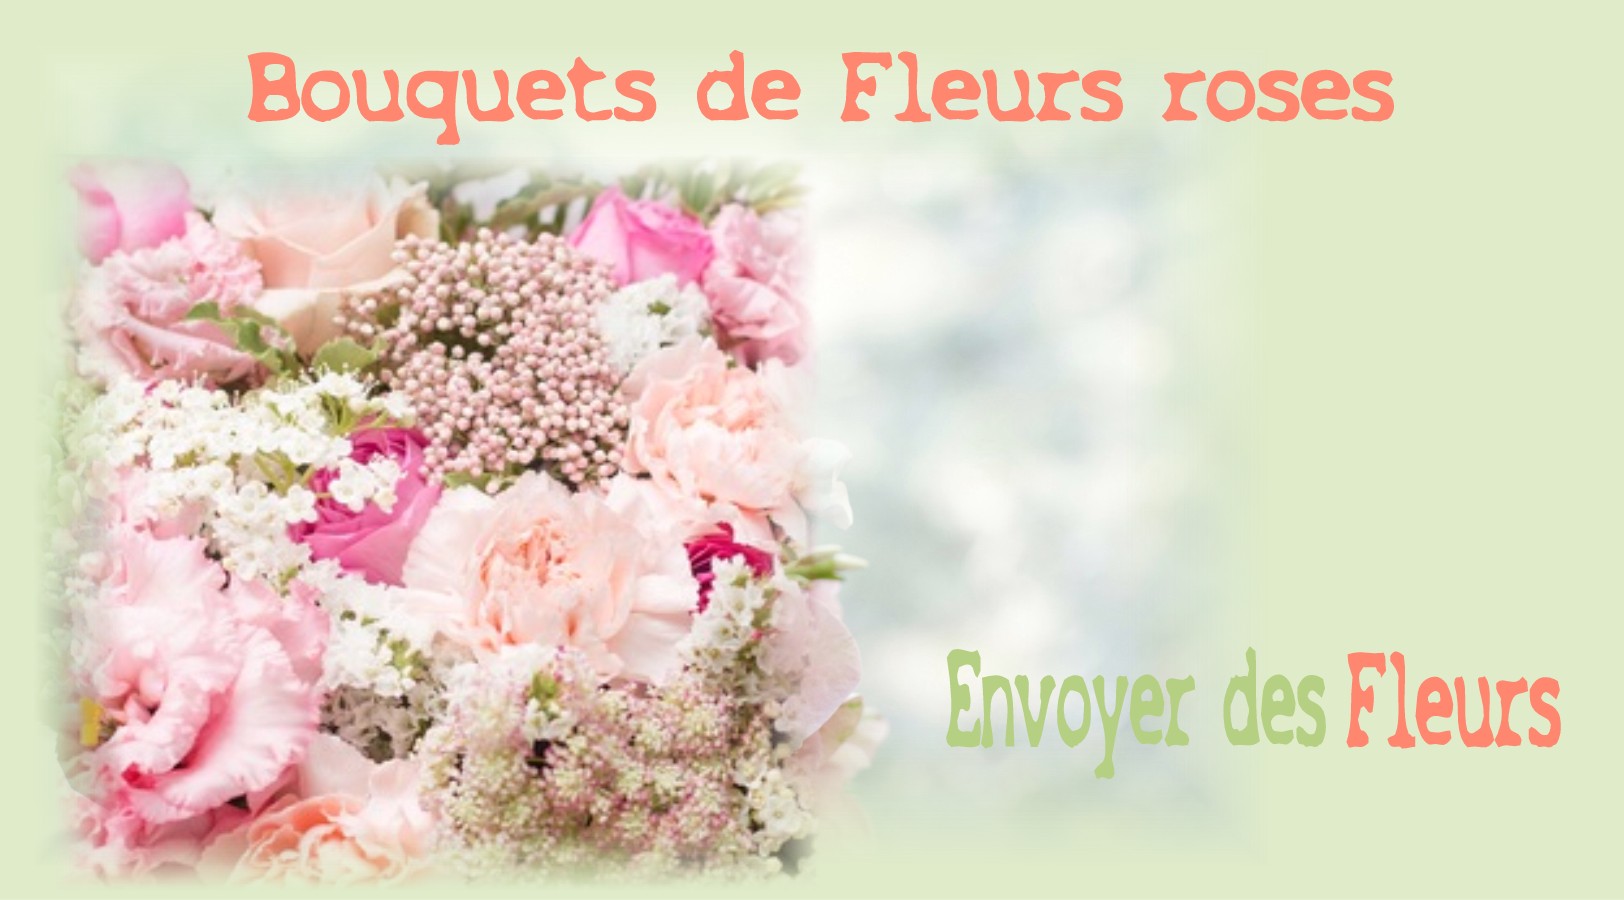 BOUQUETS DE FLEURS ROSES - FLEURISTE LYON (69) - ENVOYER DES FLEURS